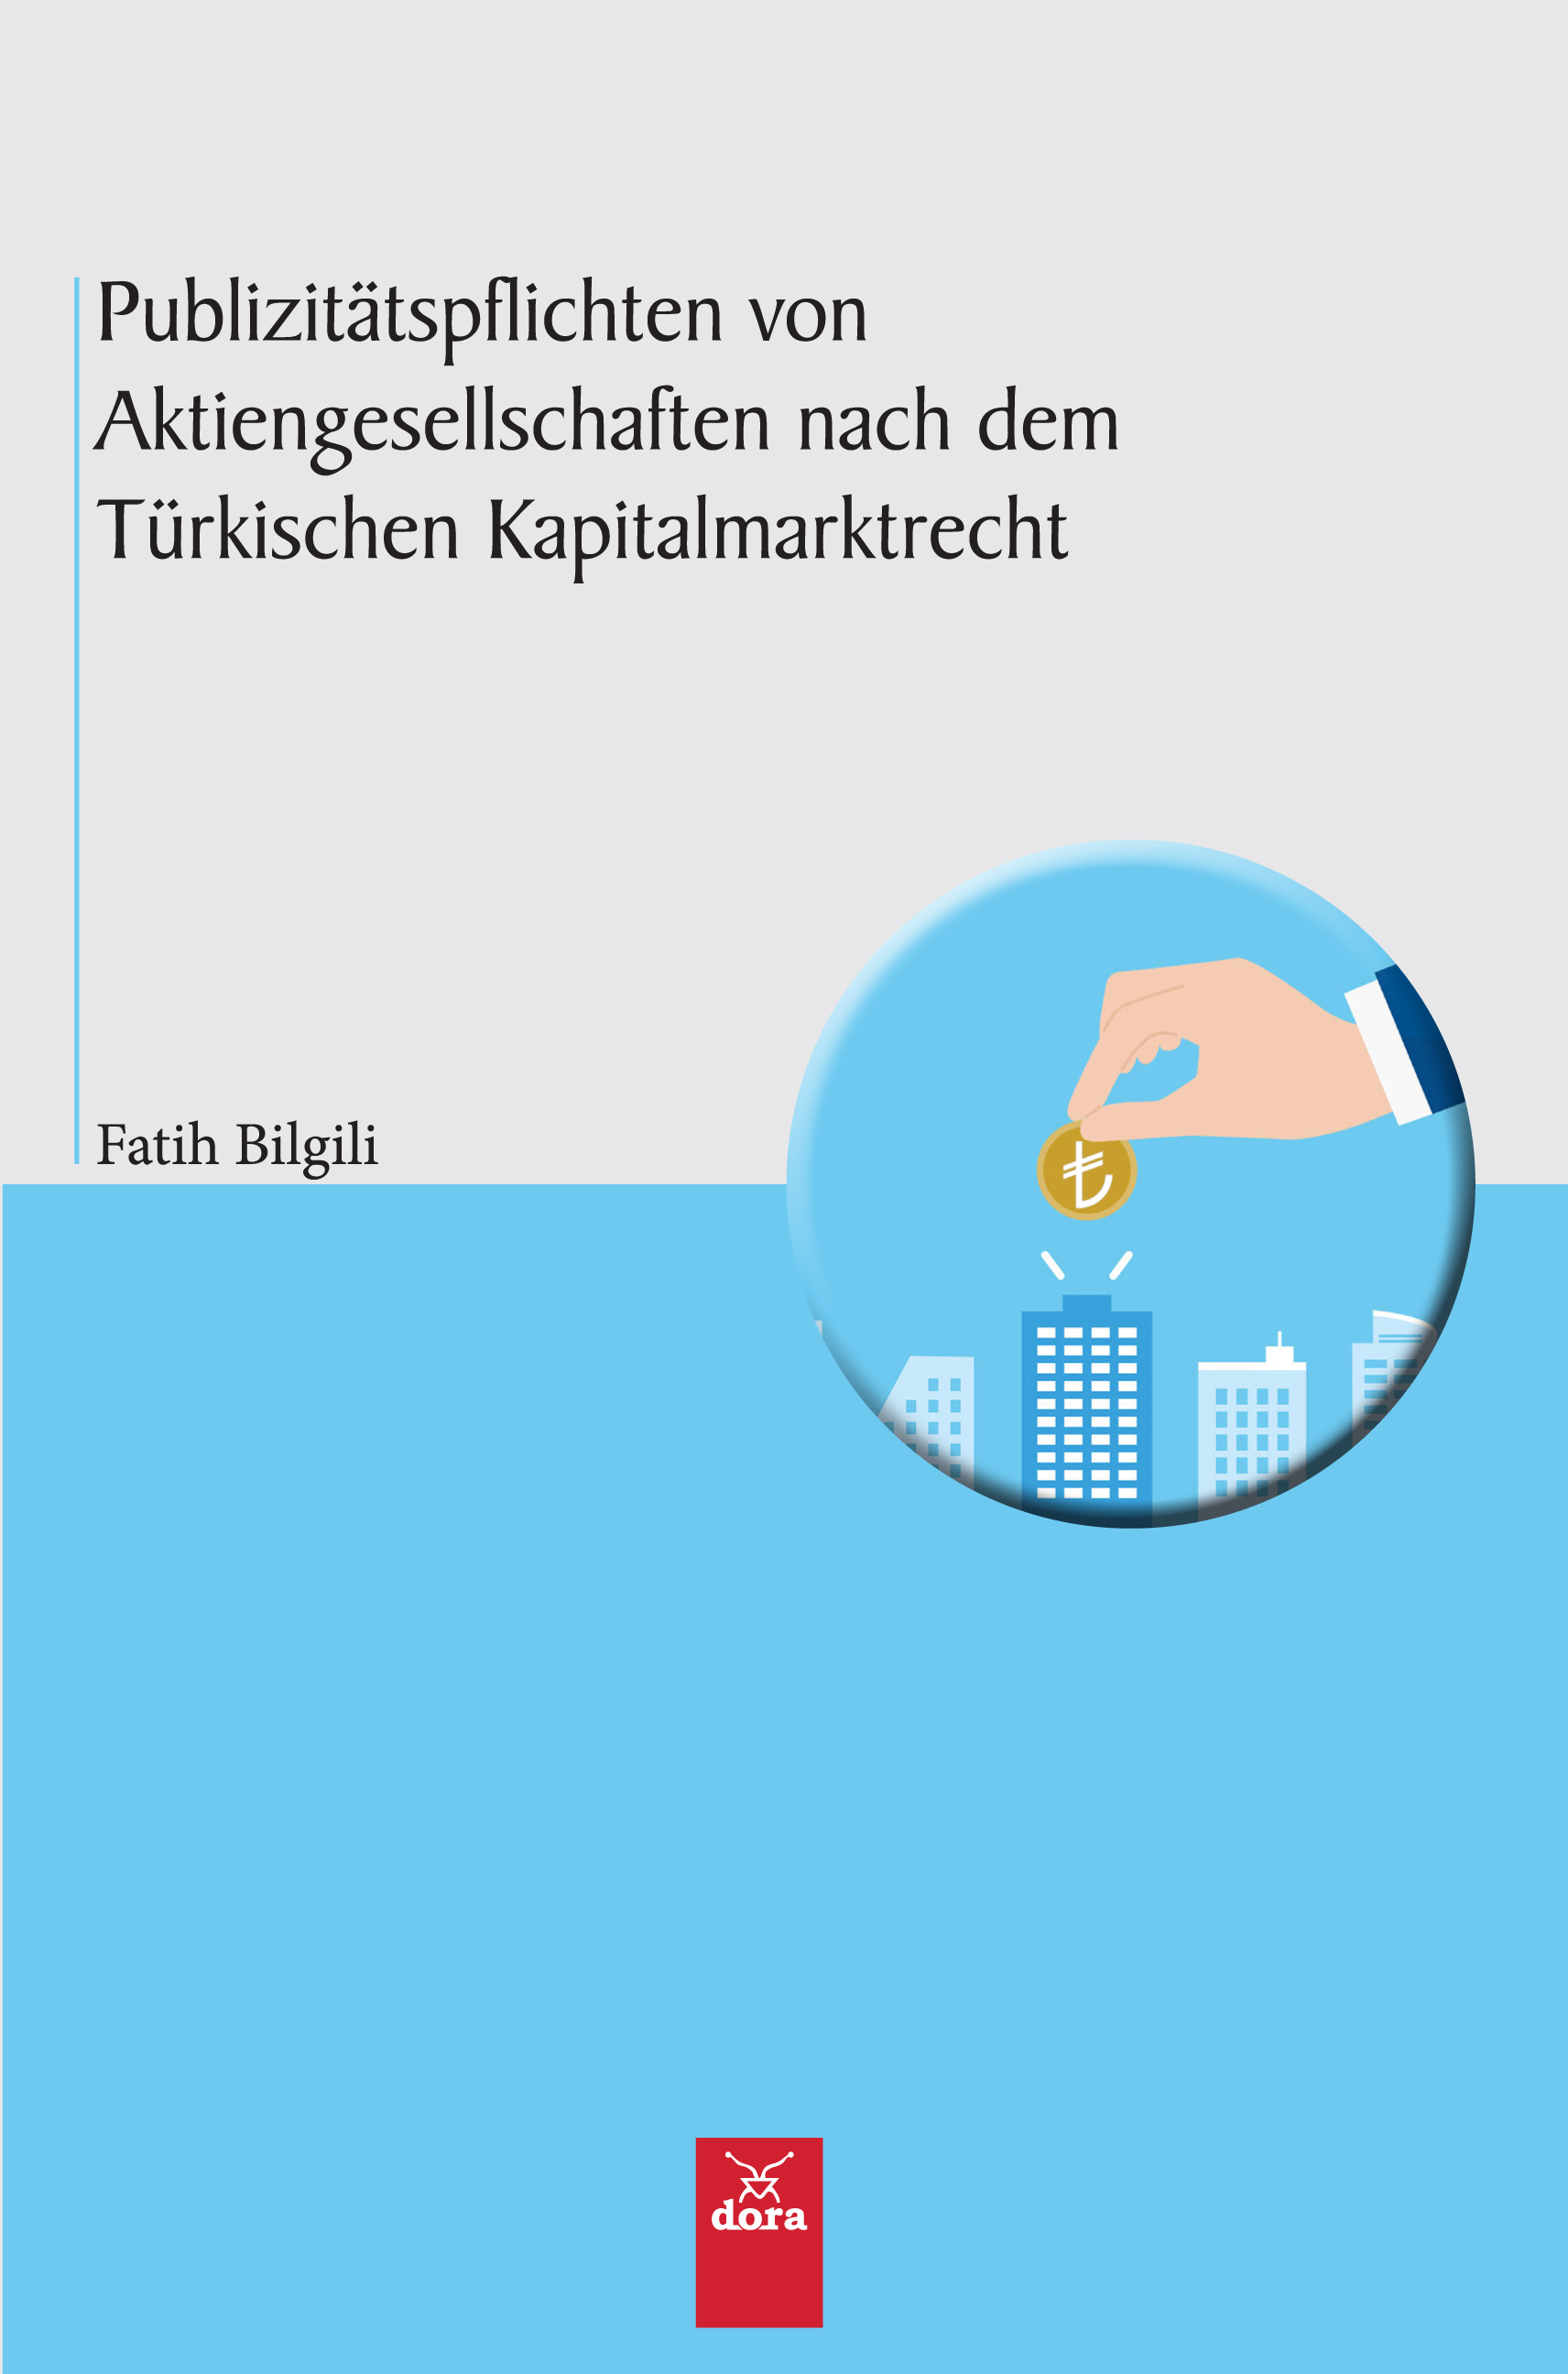 Publizitätspflichten Von Aktiengesellschaften nach dem Türkischen Kapitalmarktrecht | 130 | Dora Yayıncılık